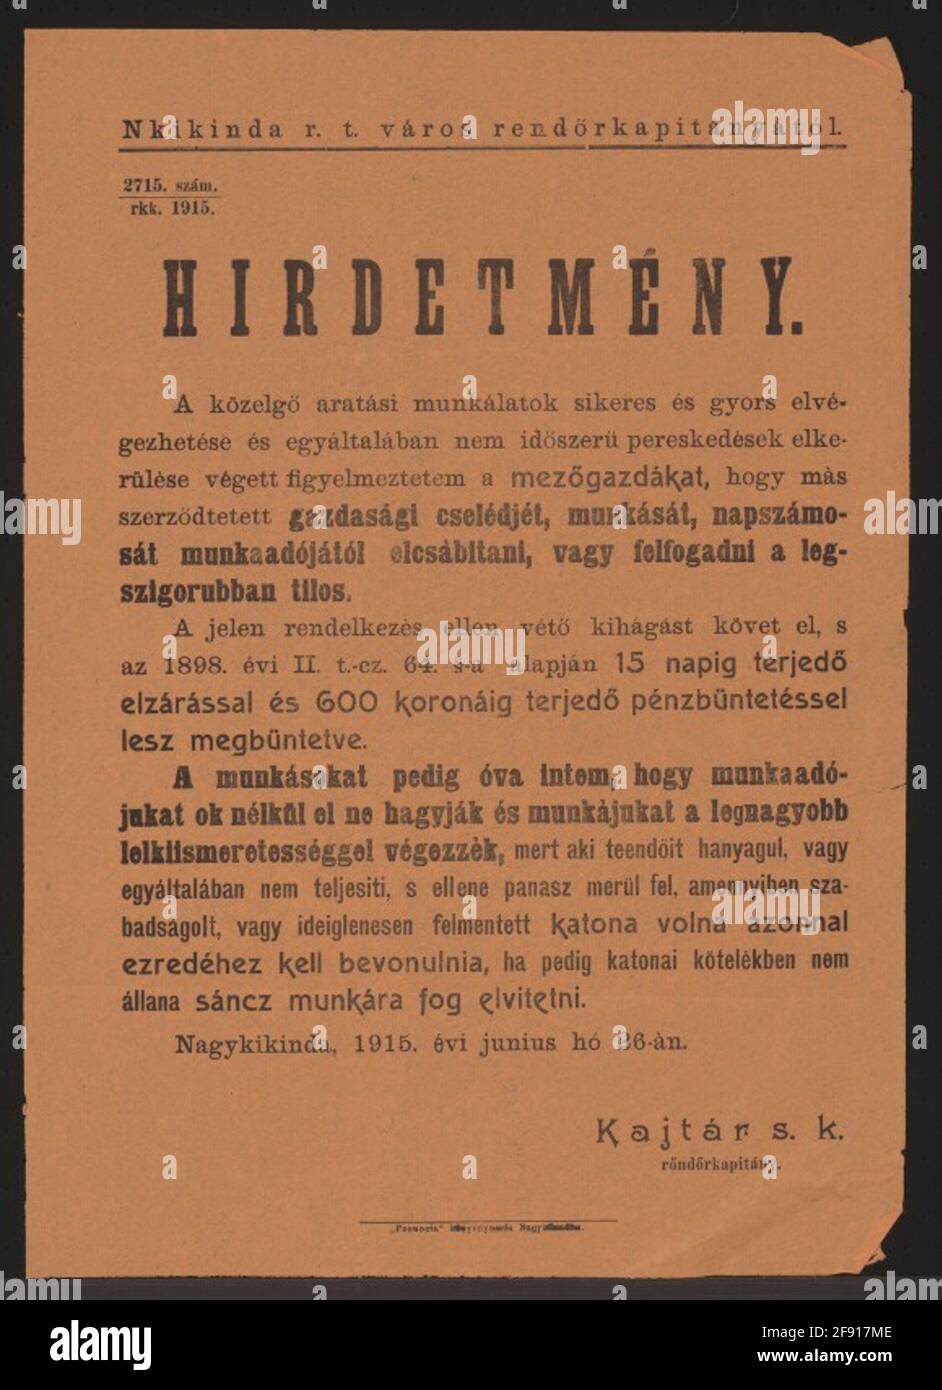 Ernte - Ankündigung - Nagykikinda - in ungarischer Sprache um den erfolgreichen Abschluss der Ernte zu sichern und Streitigkeiten zu vermeiden, warne ich die Bauern: Es ist verboten, Landarbeiter oder Tagelöhner von anderen zu ermächtigen - Übertretungen werden bis zu 15 Tage Haft und bis zu 600 Kronen Fine Pet - Arbeiter sein, die nicht richtig zu ihrer Arbeit arbeiten, Müssen sofort in ihrem Regiment engagieren oder sie werden verwendet, um die Mauer zu richten - Nagykikinda, 26. Juni 1915 - Kajtár MP, Police Hauptmann - 2715./1915. Stockfoto